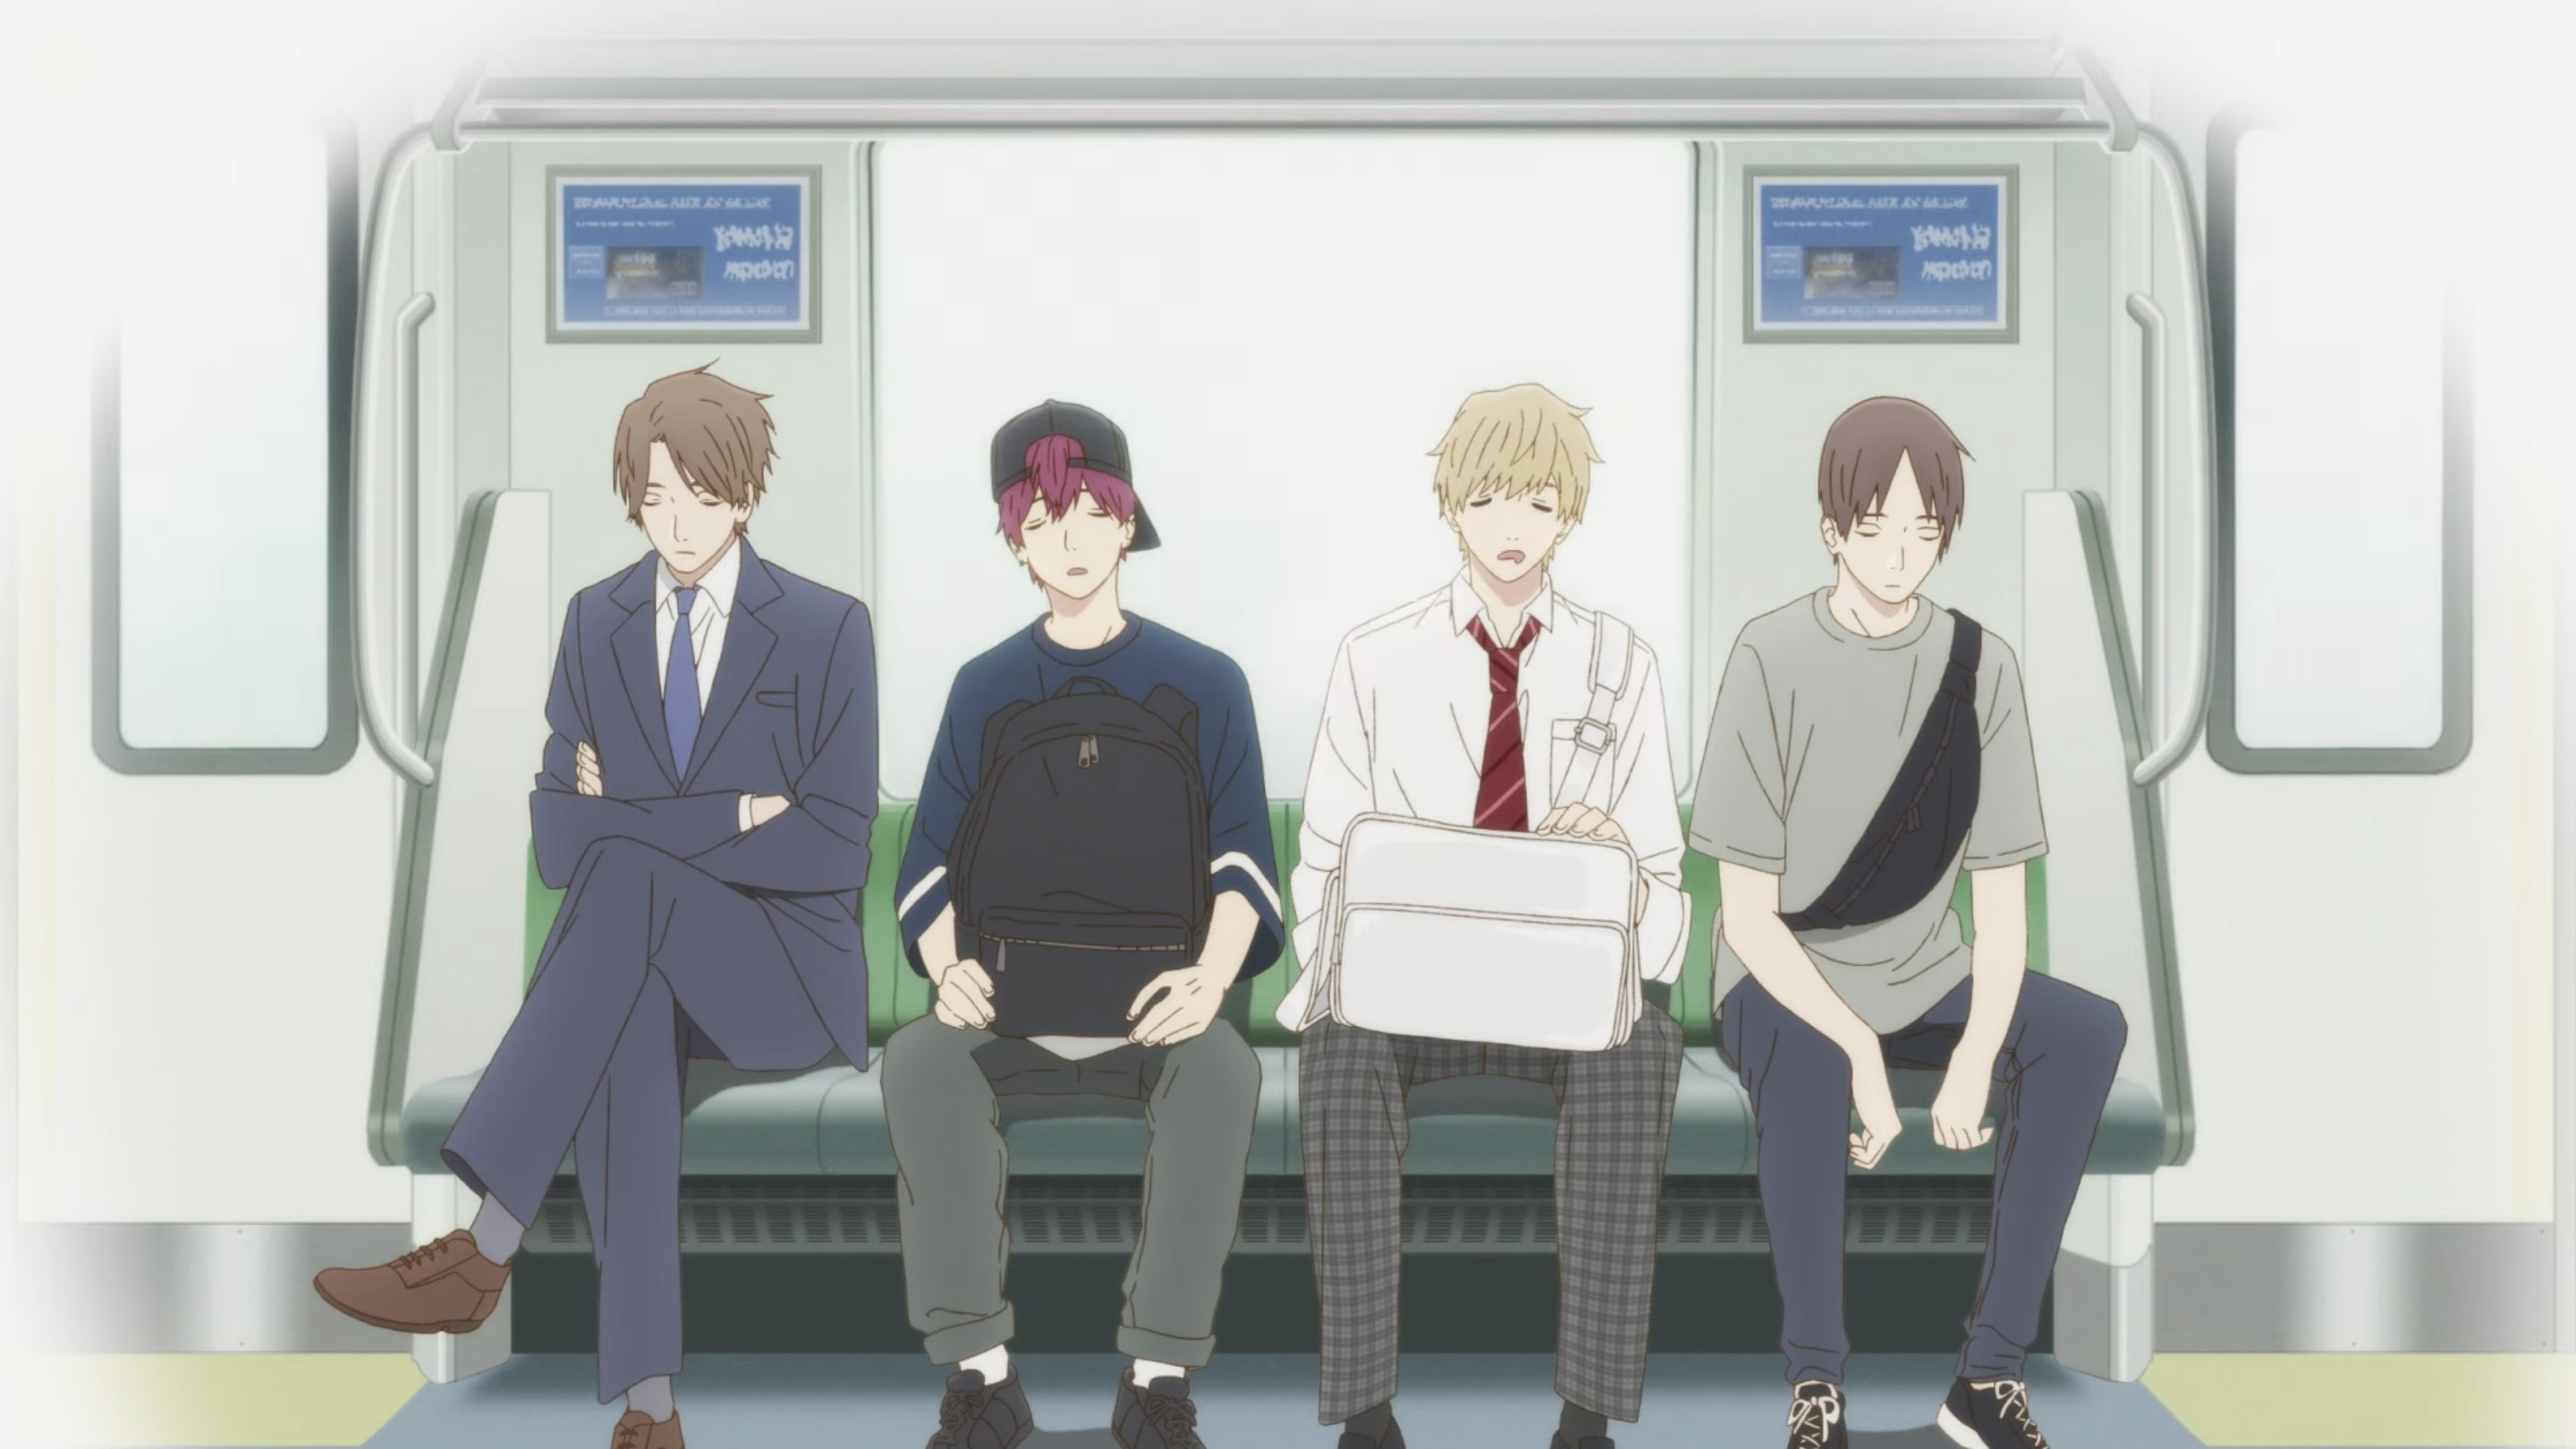 Four anime boys sitting on a train